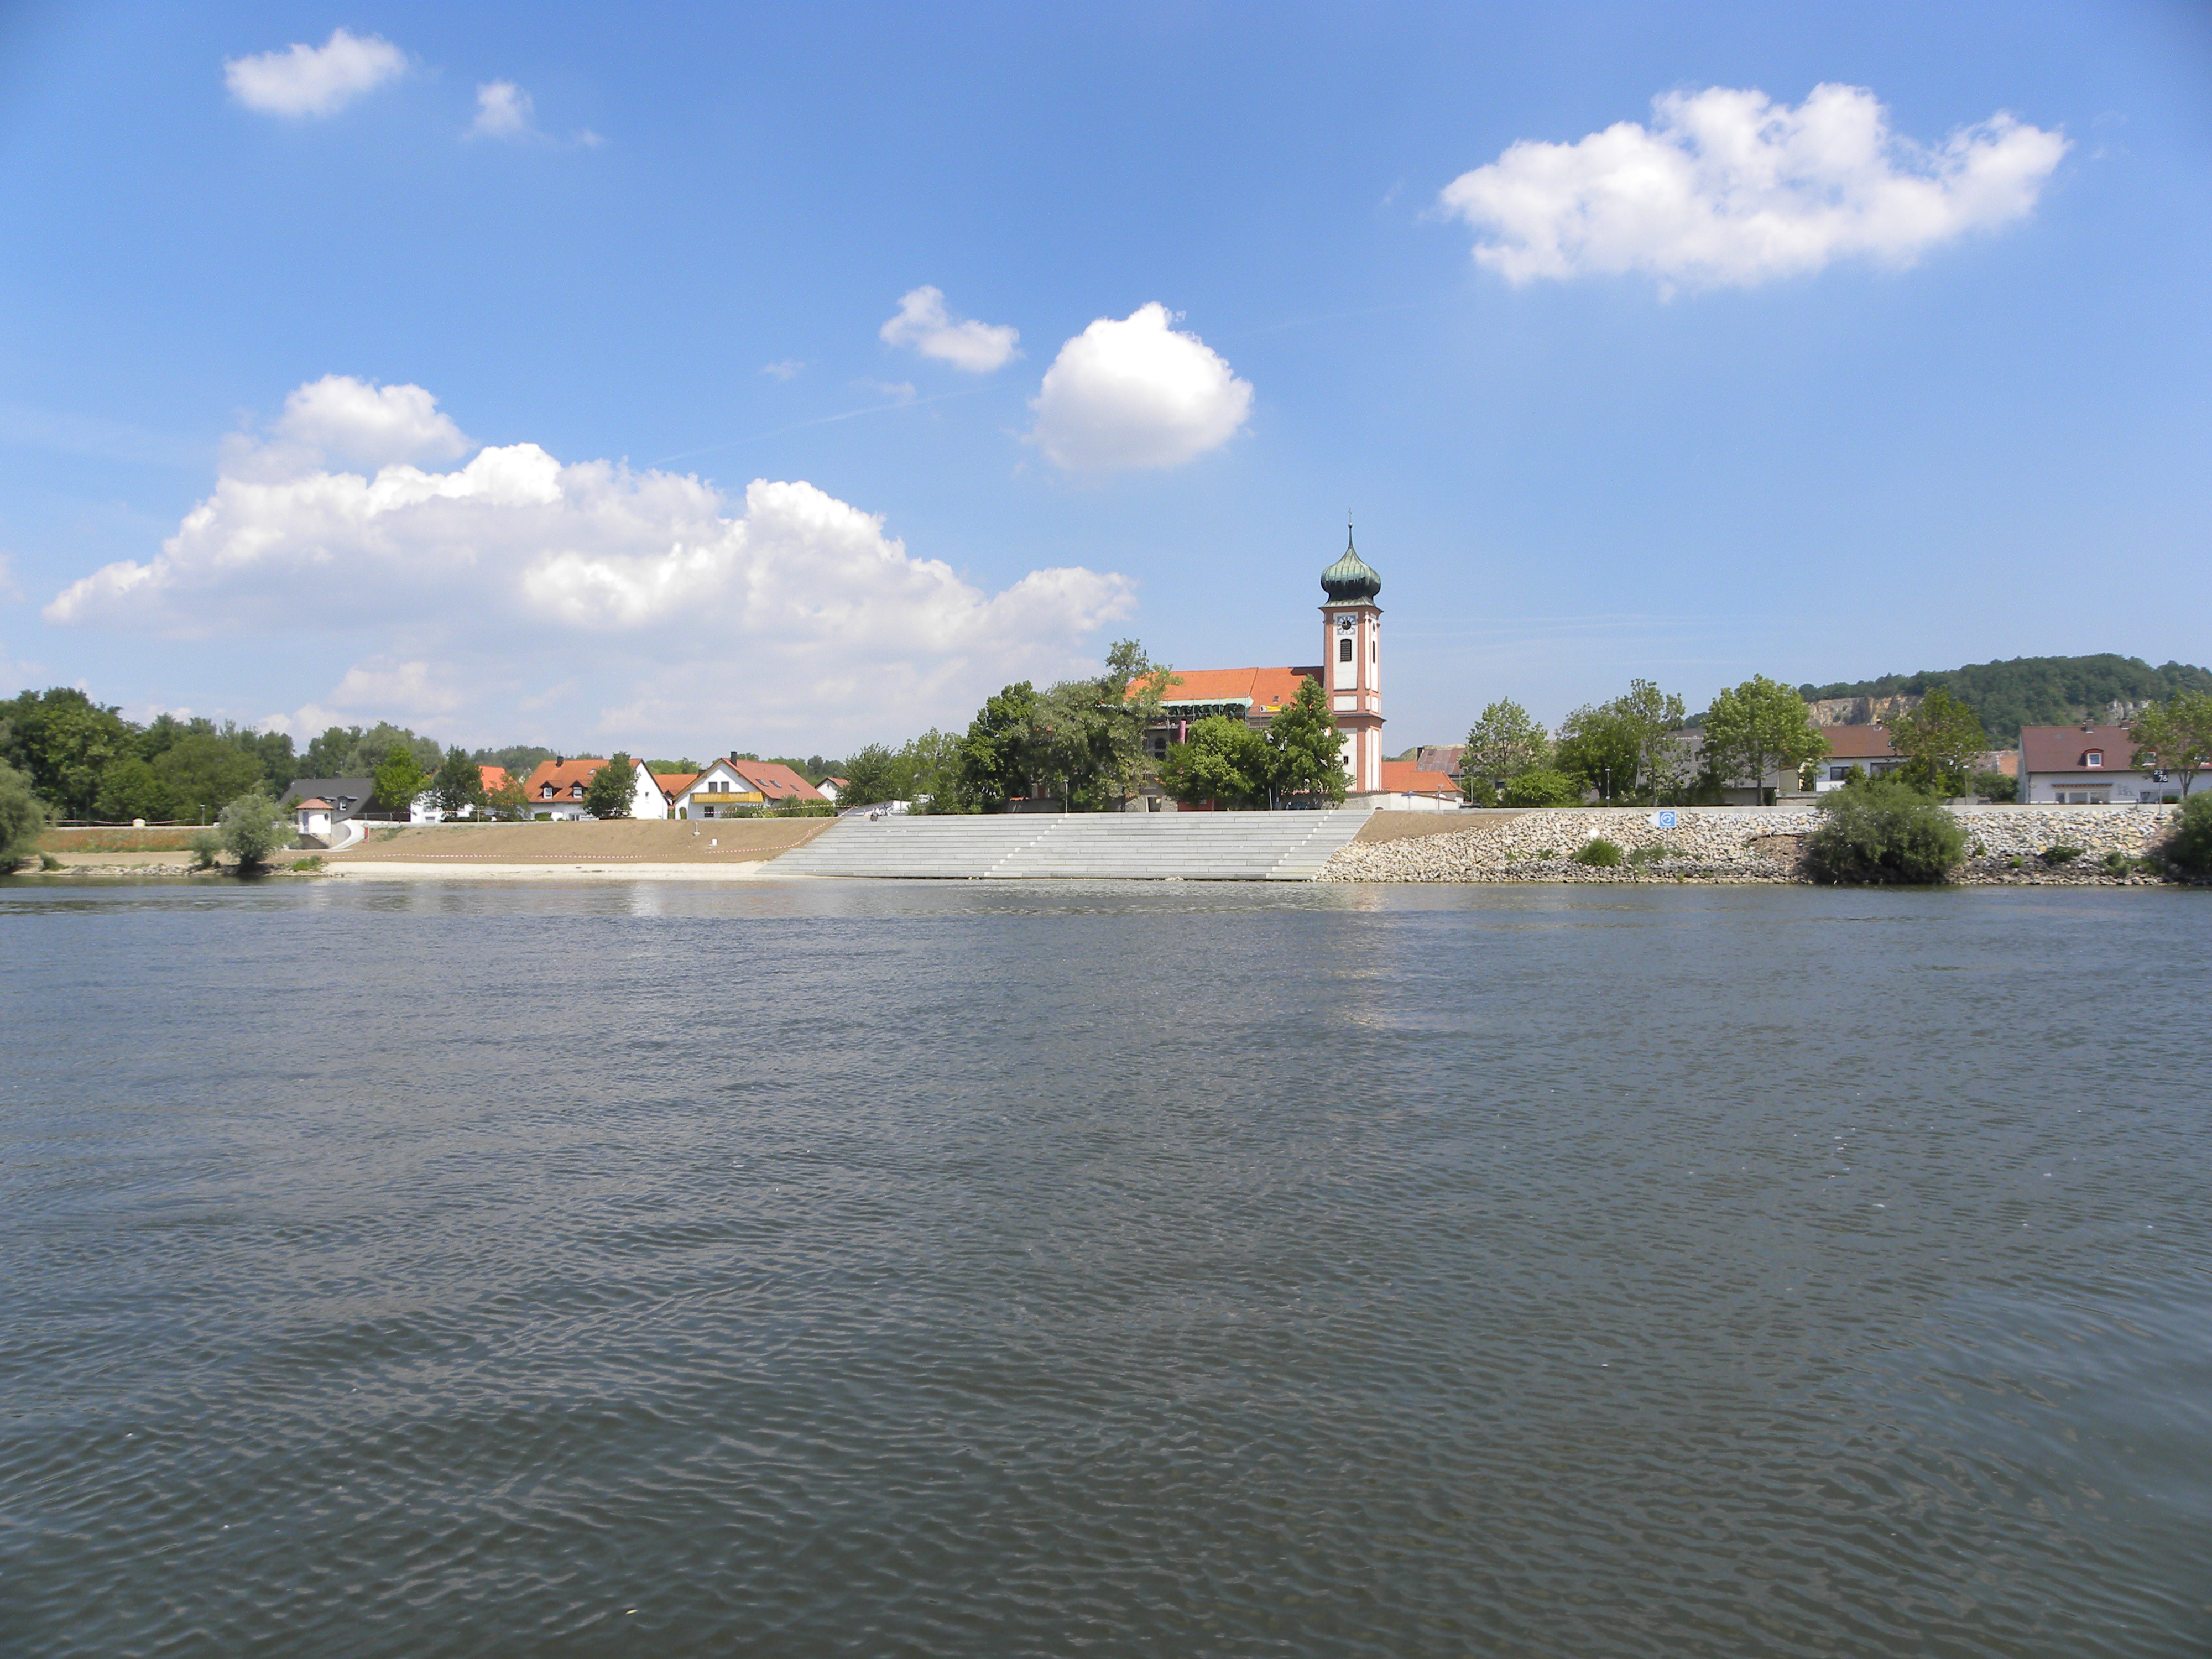 Die Donau im Vordergrund, dahinter die Treppenanlage und die Kirche